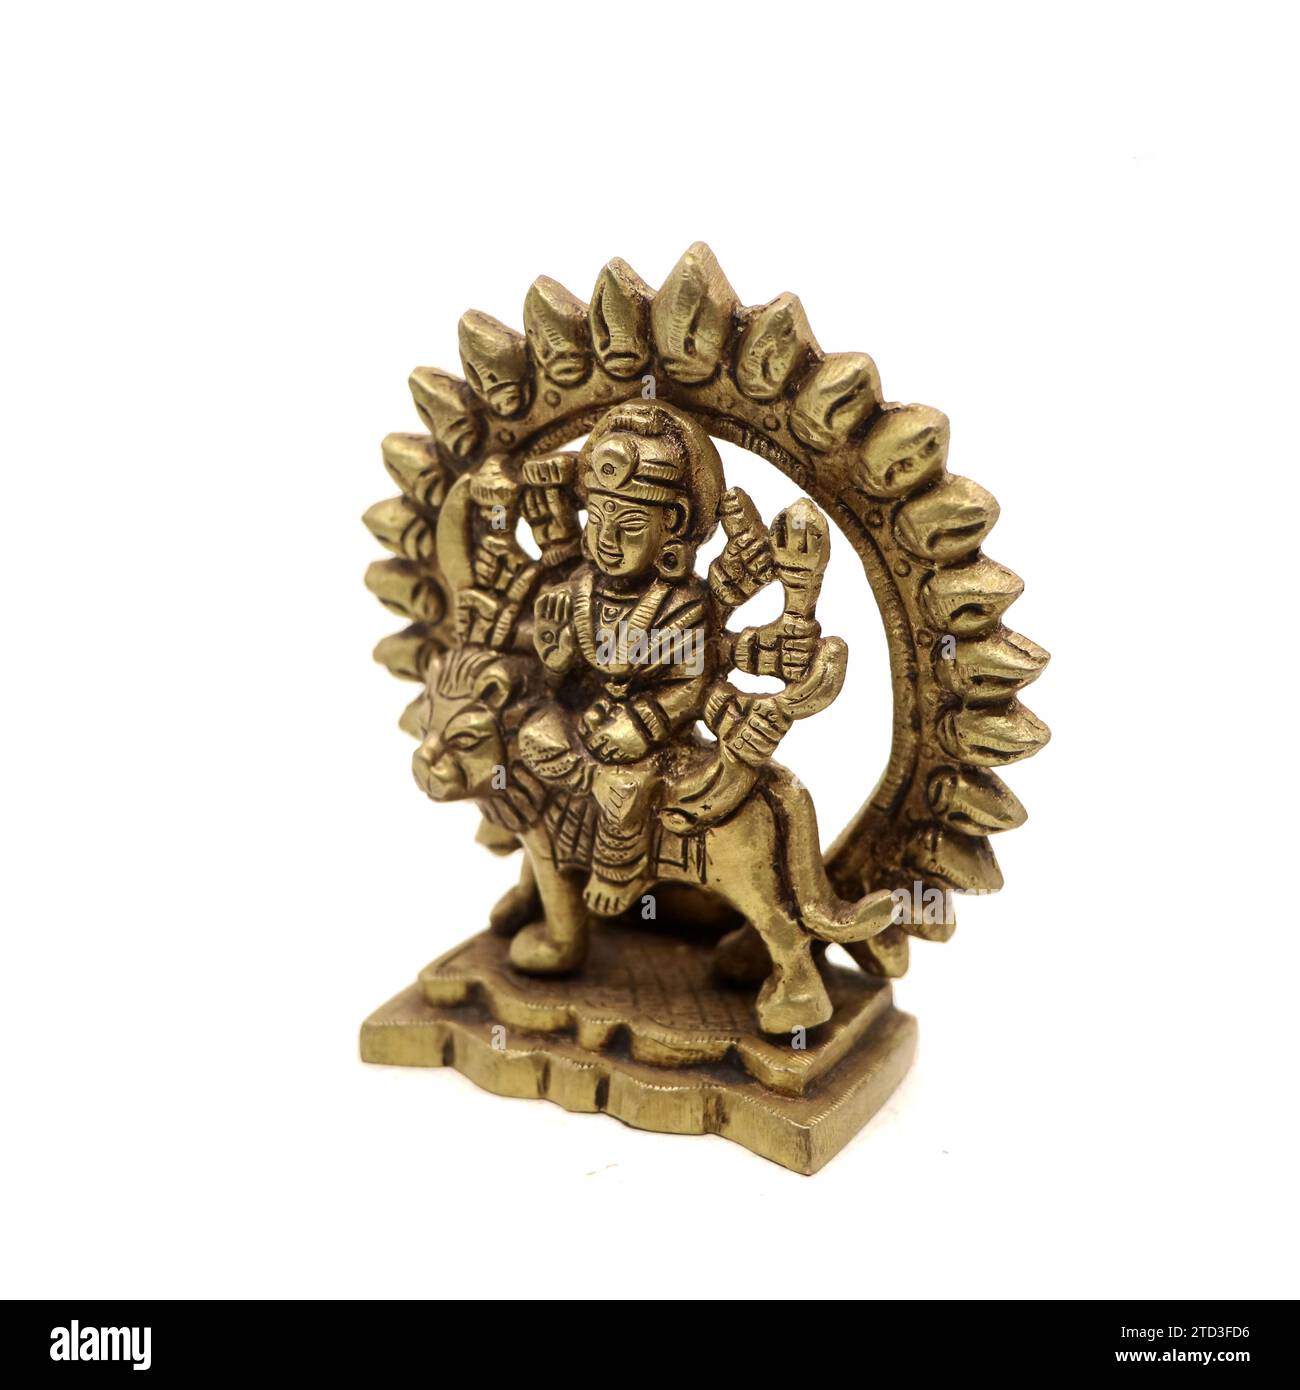 statue de la déesse durga devi de la religion hindoue tenant plusieurs armes dans ses nombreux bras, assise sur son lion Banque D'Images